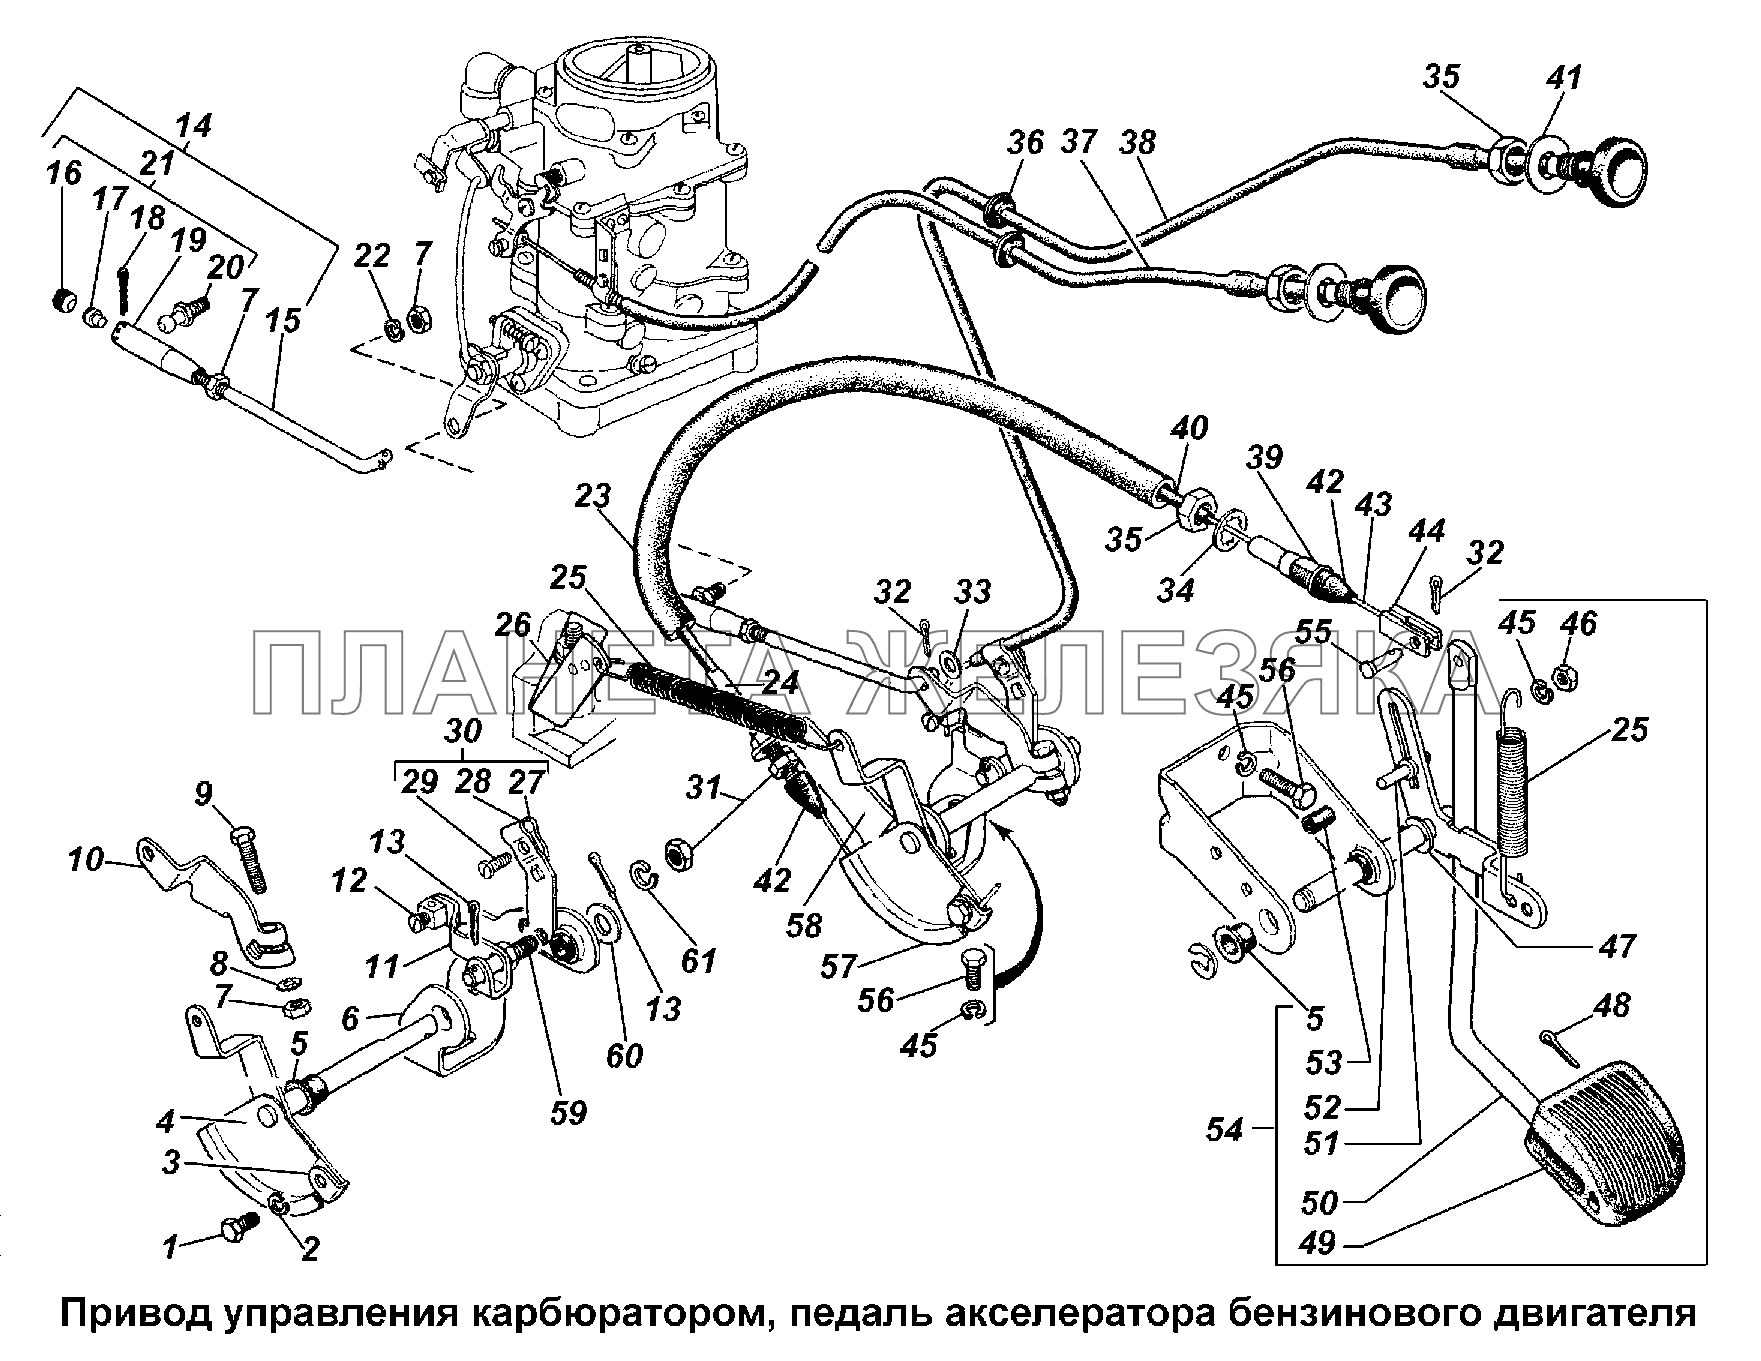 Привод управления карбюратором ГАЗ-3308